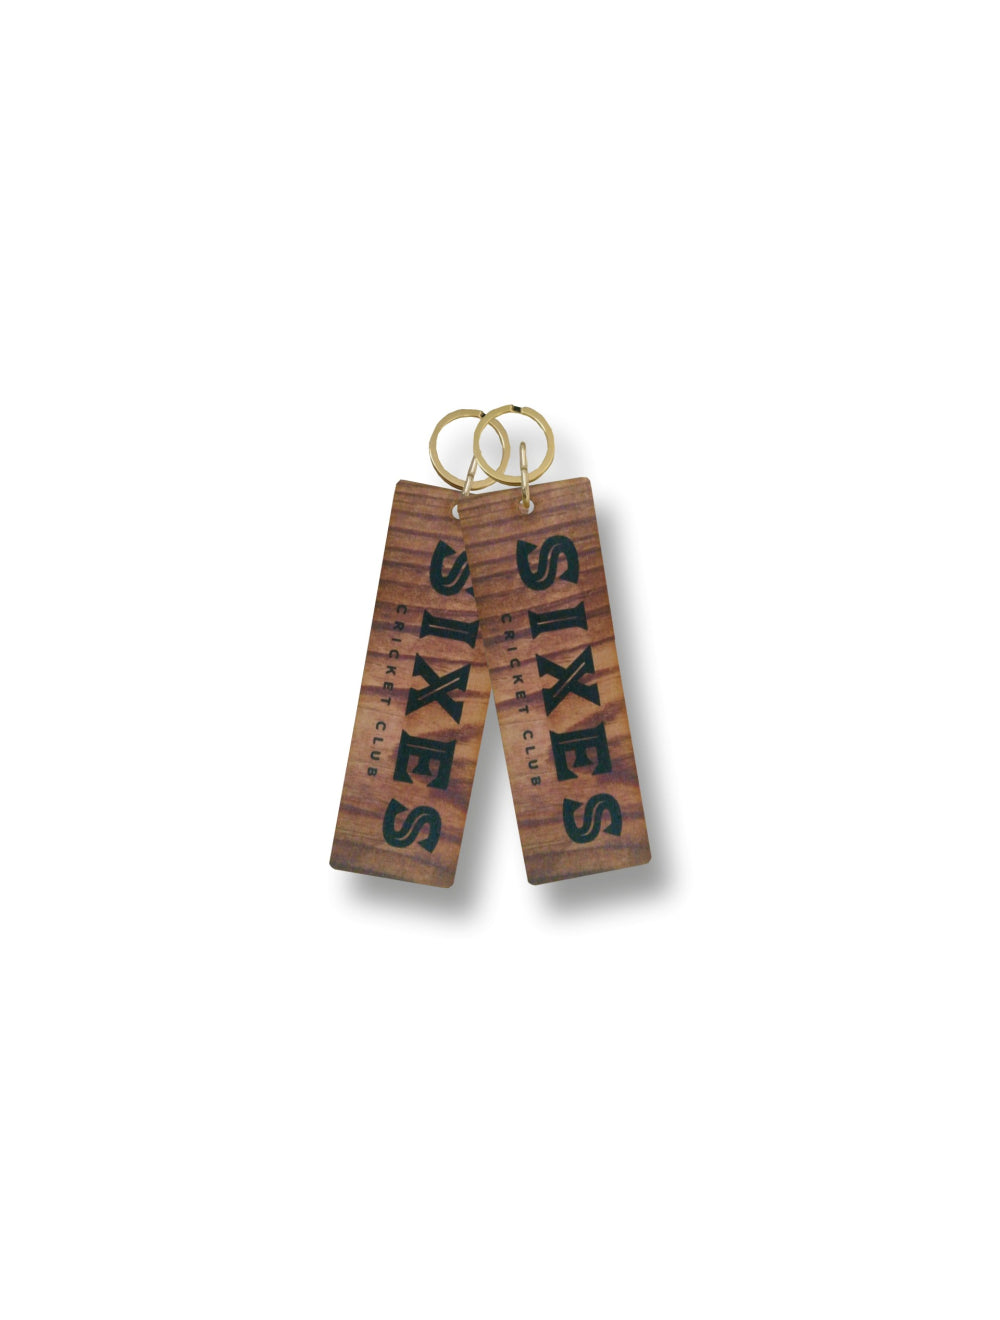 Oak Floor wooden Key Tags